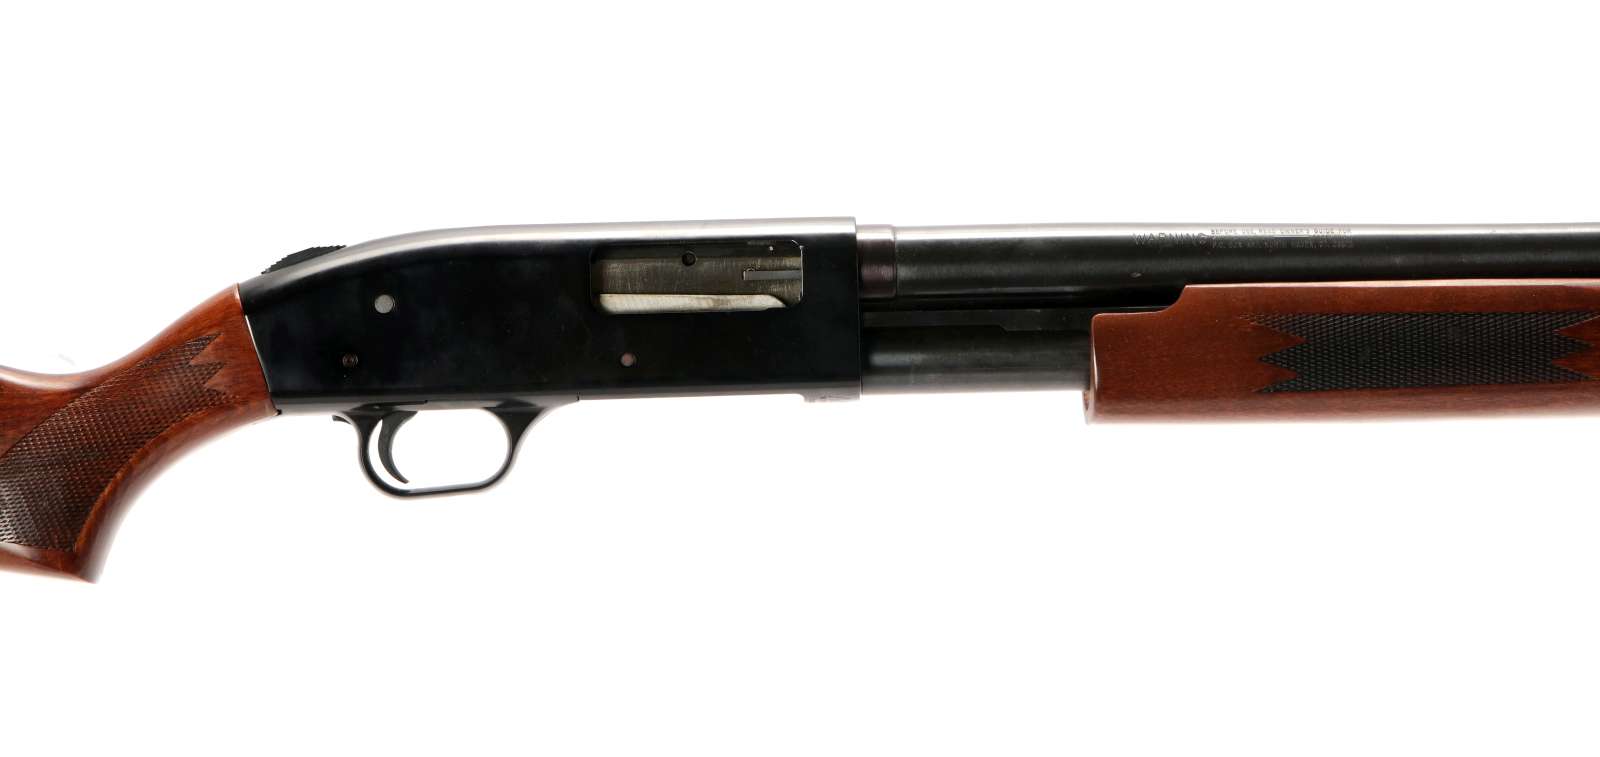 A MOSSBERG 500A 12 GAUGE PUMP SHOTGUN, 28 INCH